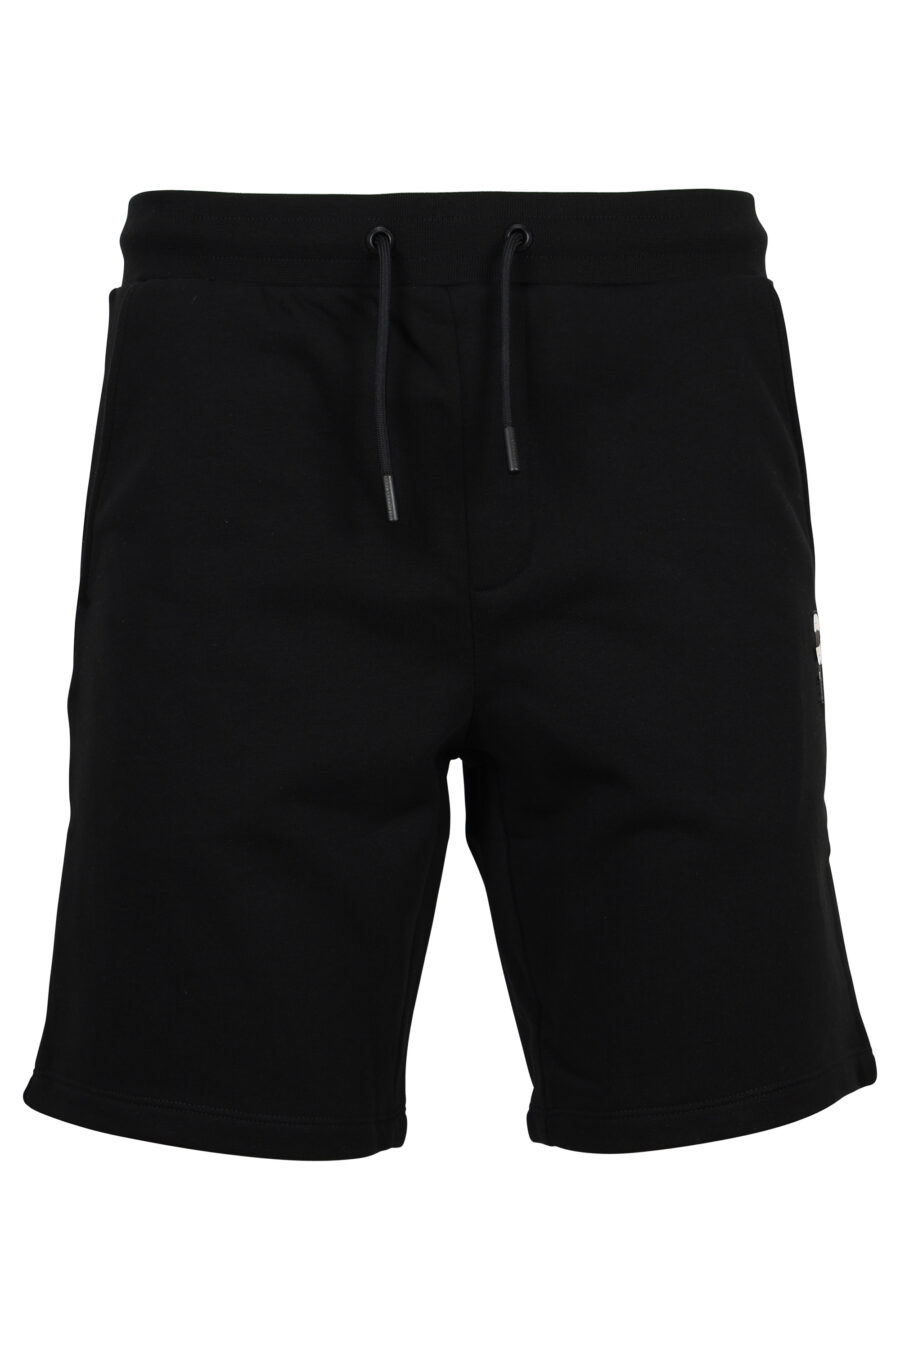 Pantalón de chándal corto negro con minilogo "ikonik" - 4062225691858